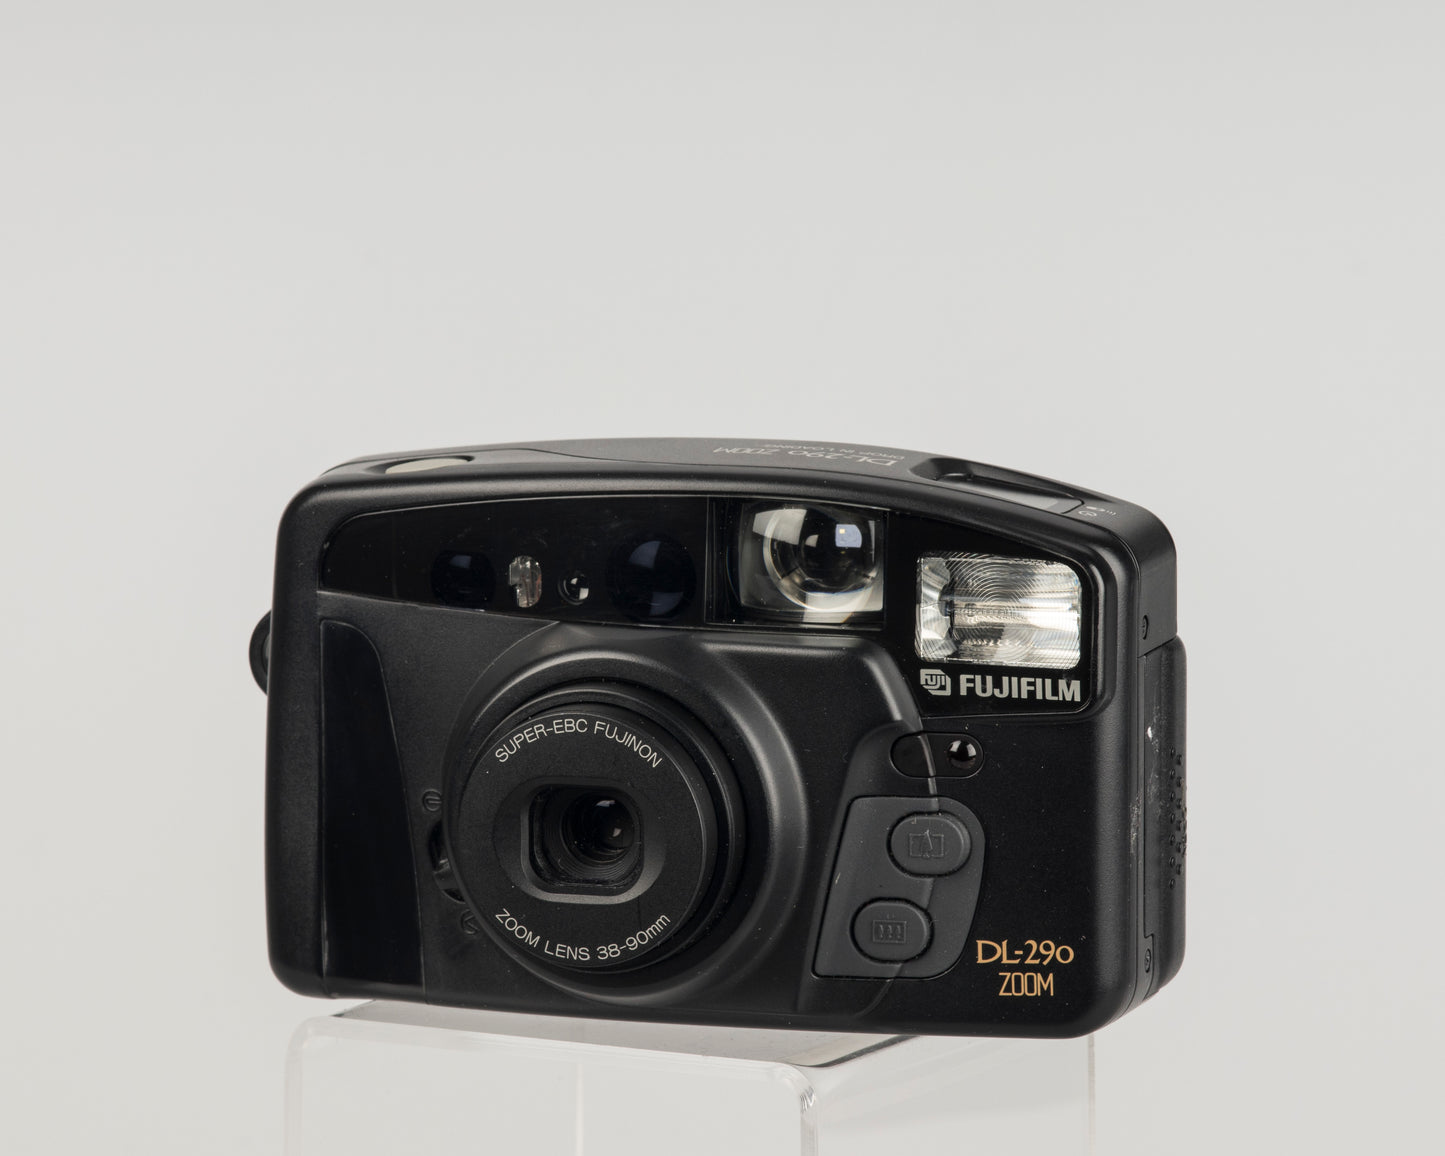 Fujifilm DL-290 Zoom 35mm camera